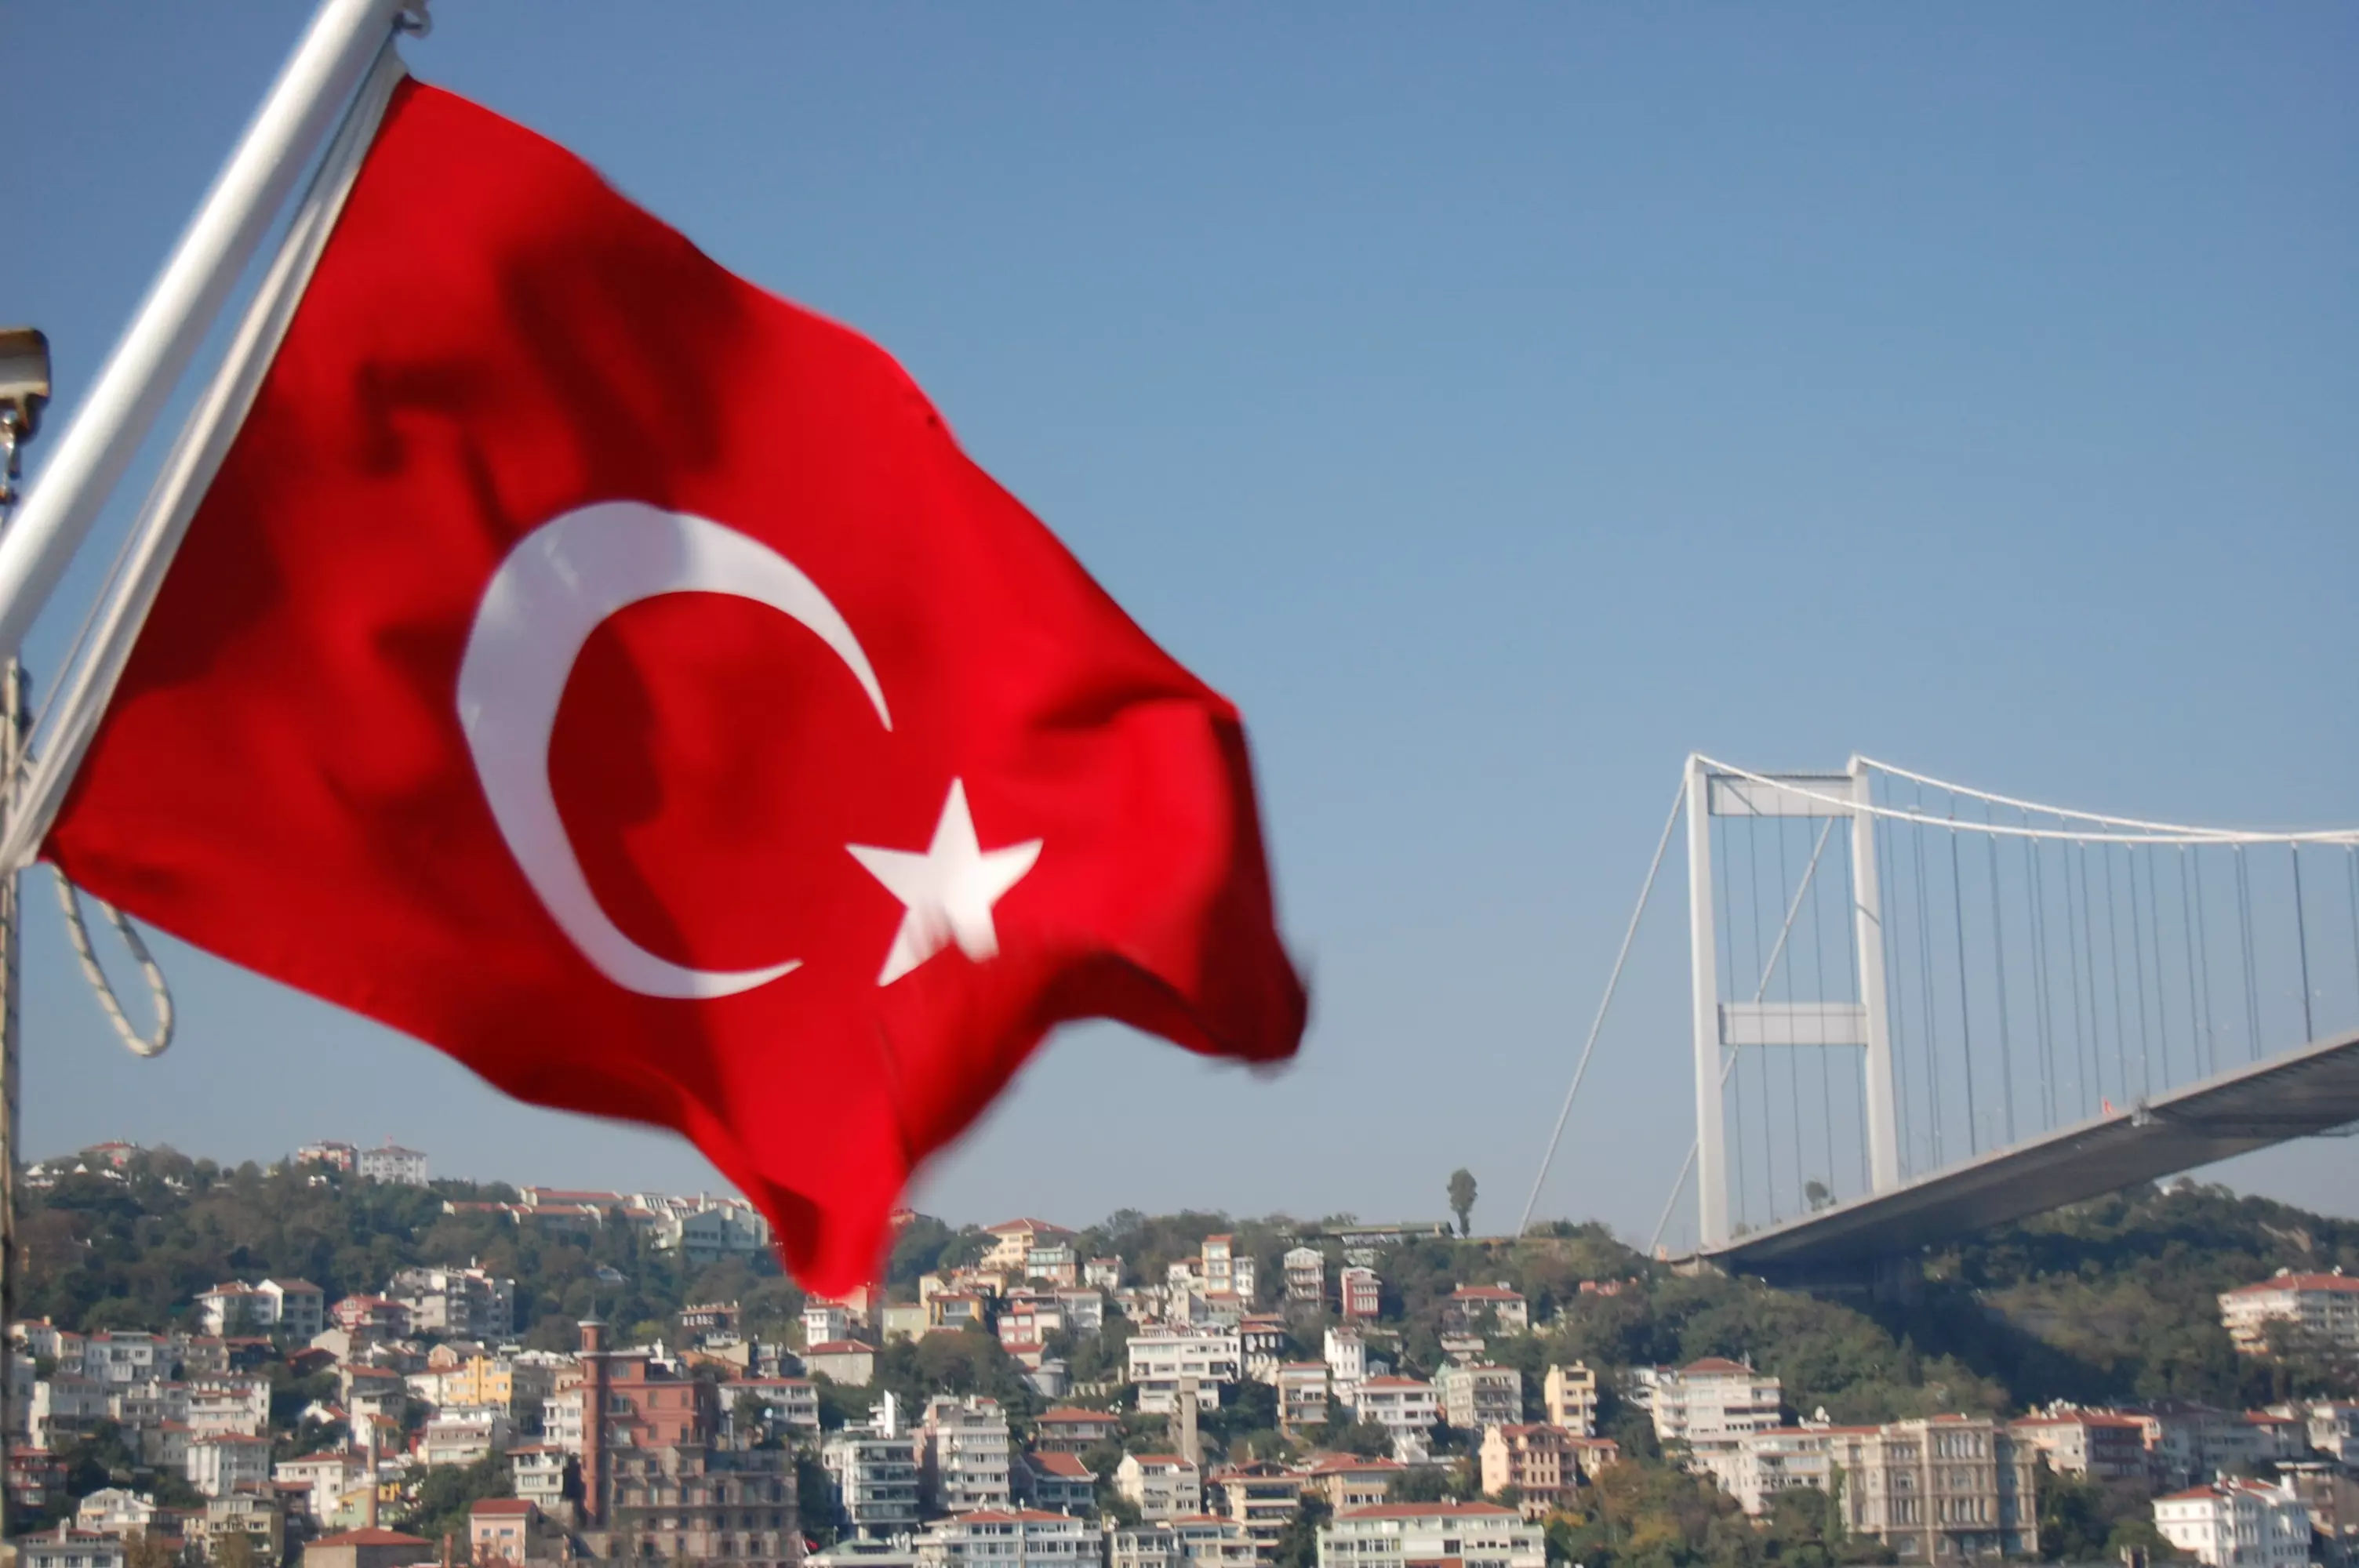 ليسوا بـ"عالة" ... اللاجئون السوريون في تركيا وراء الارتفاع المفاجئ للنمو في الاقتصاد